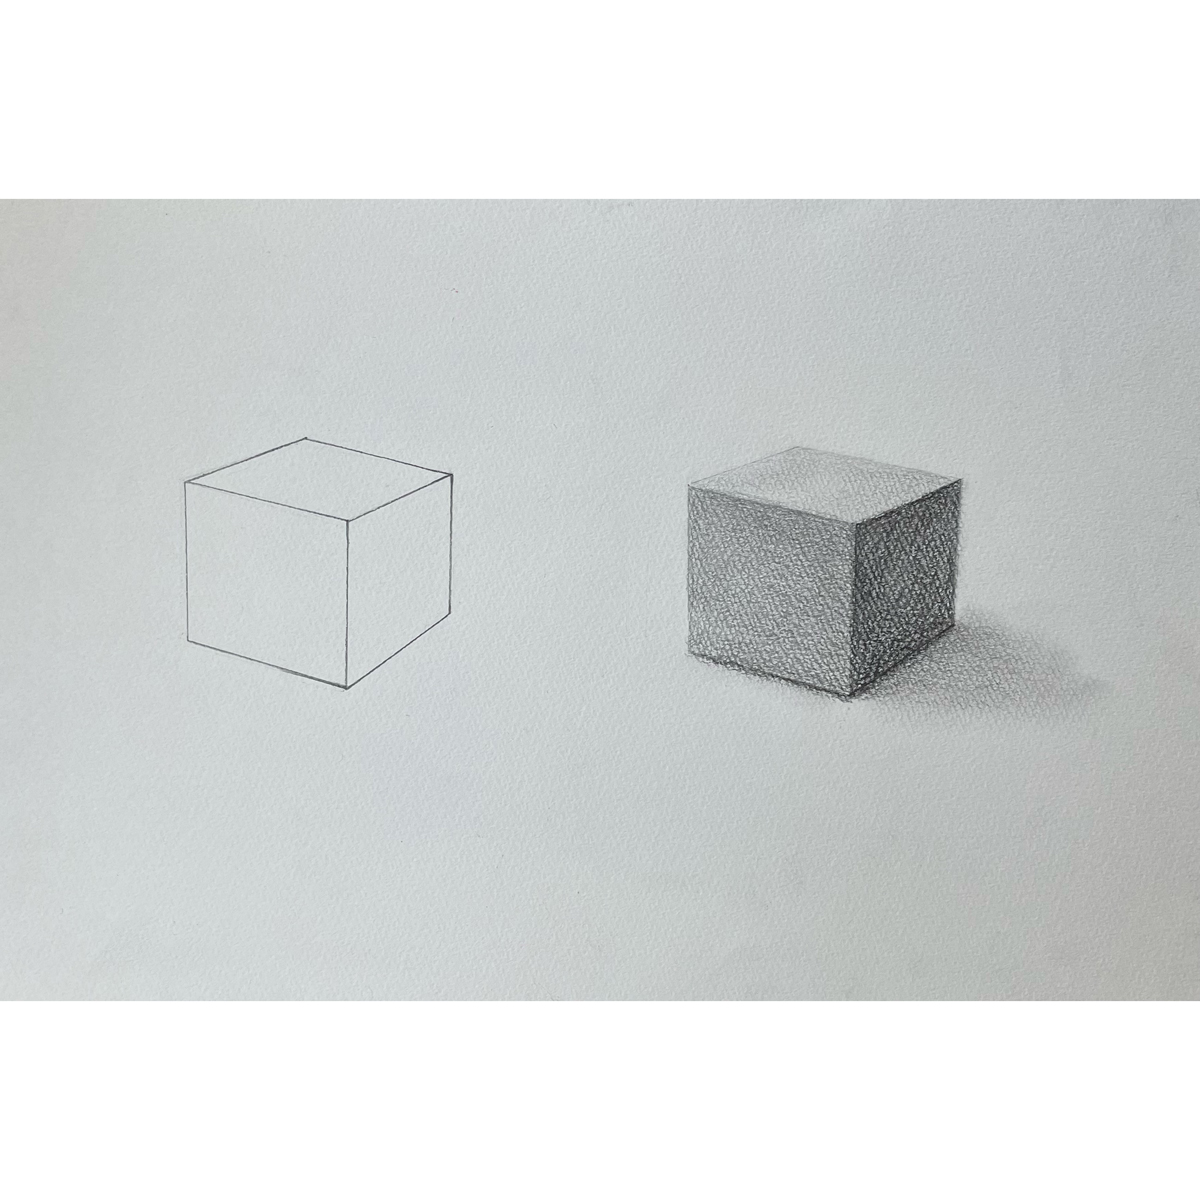 6月1-2週目・中高生向けデッサンカリキュラム「立方体の描き方」